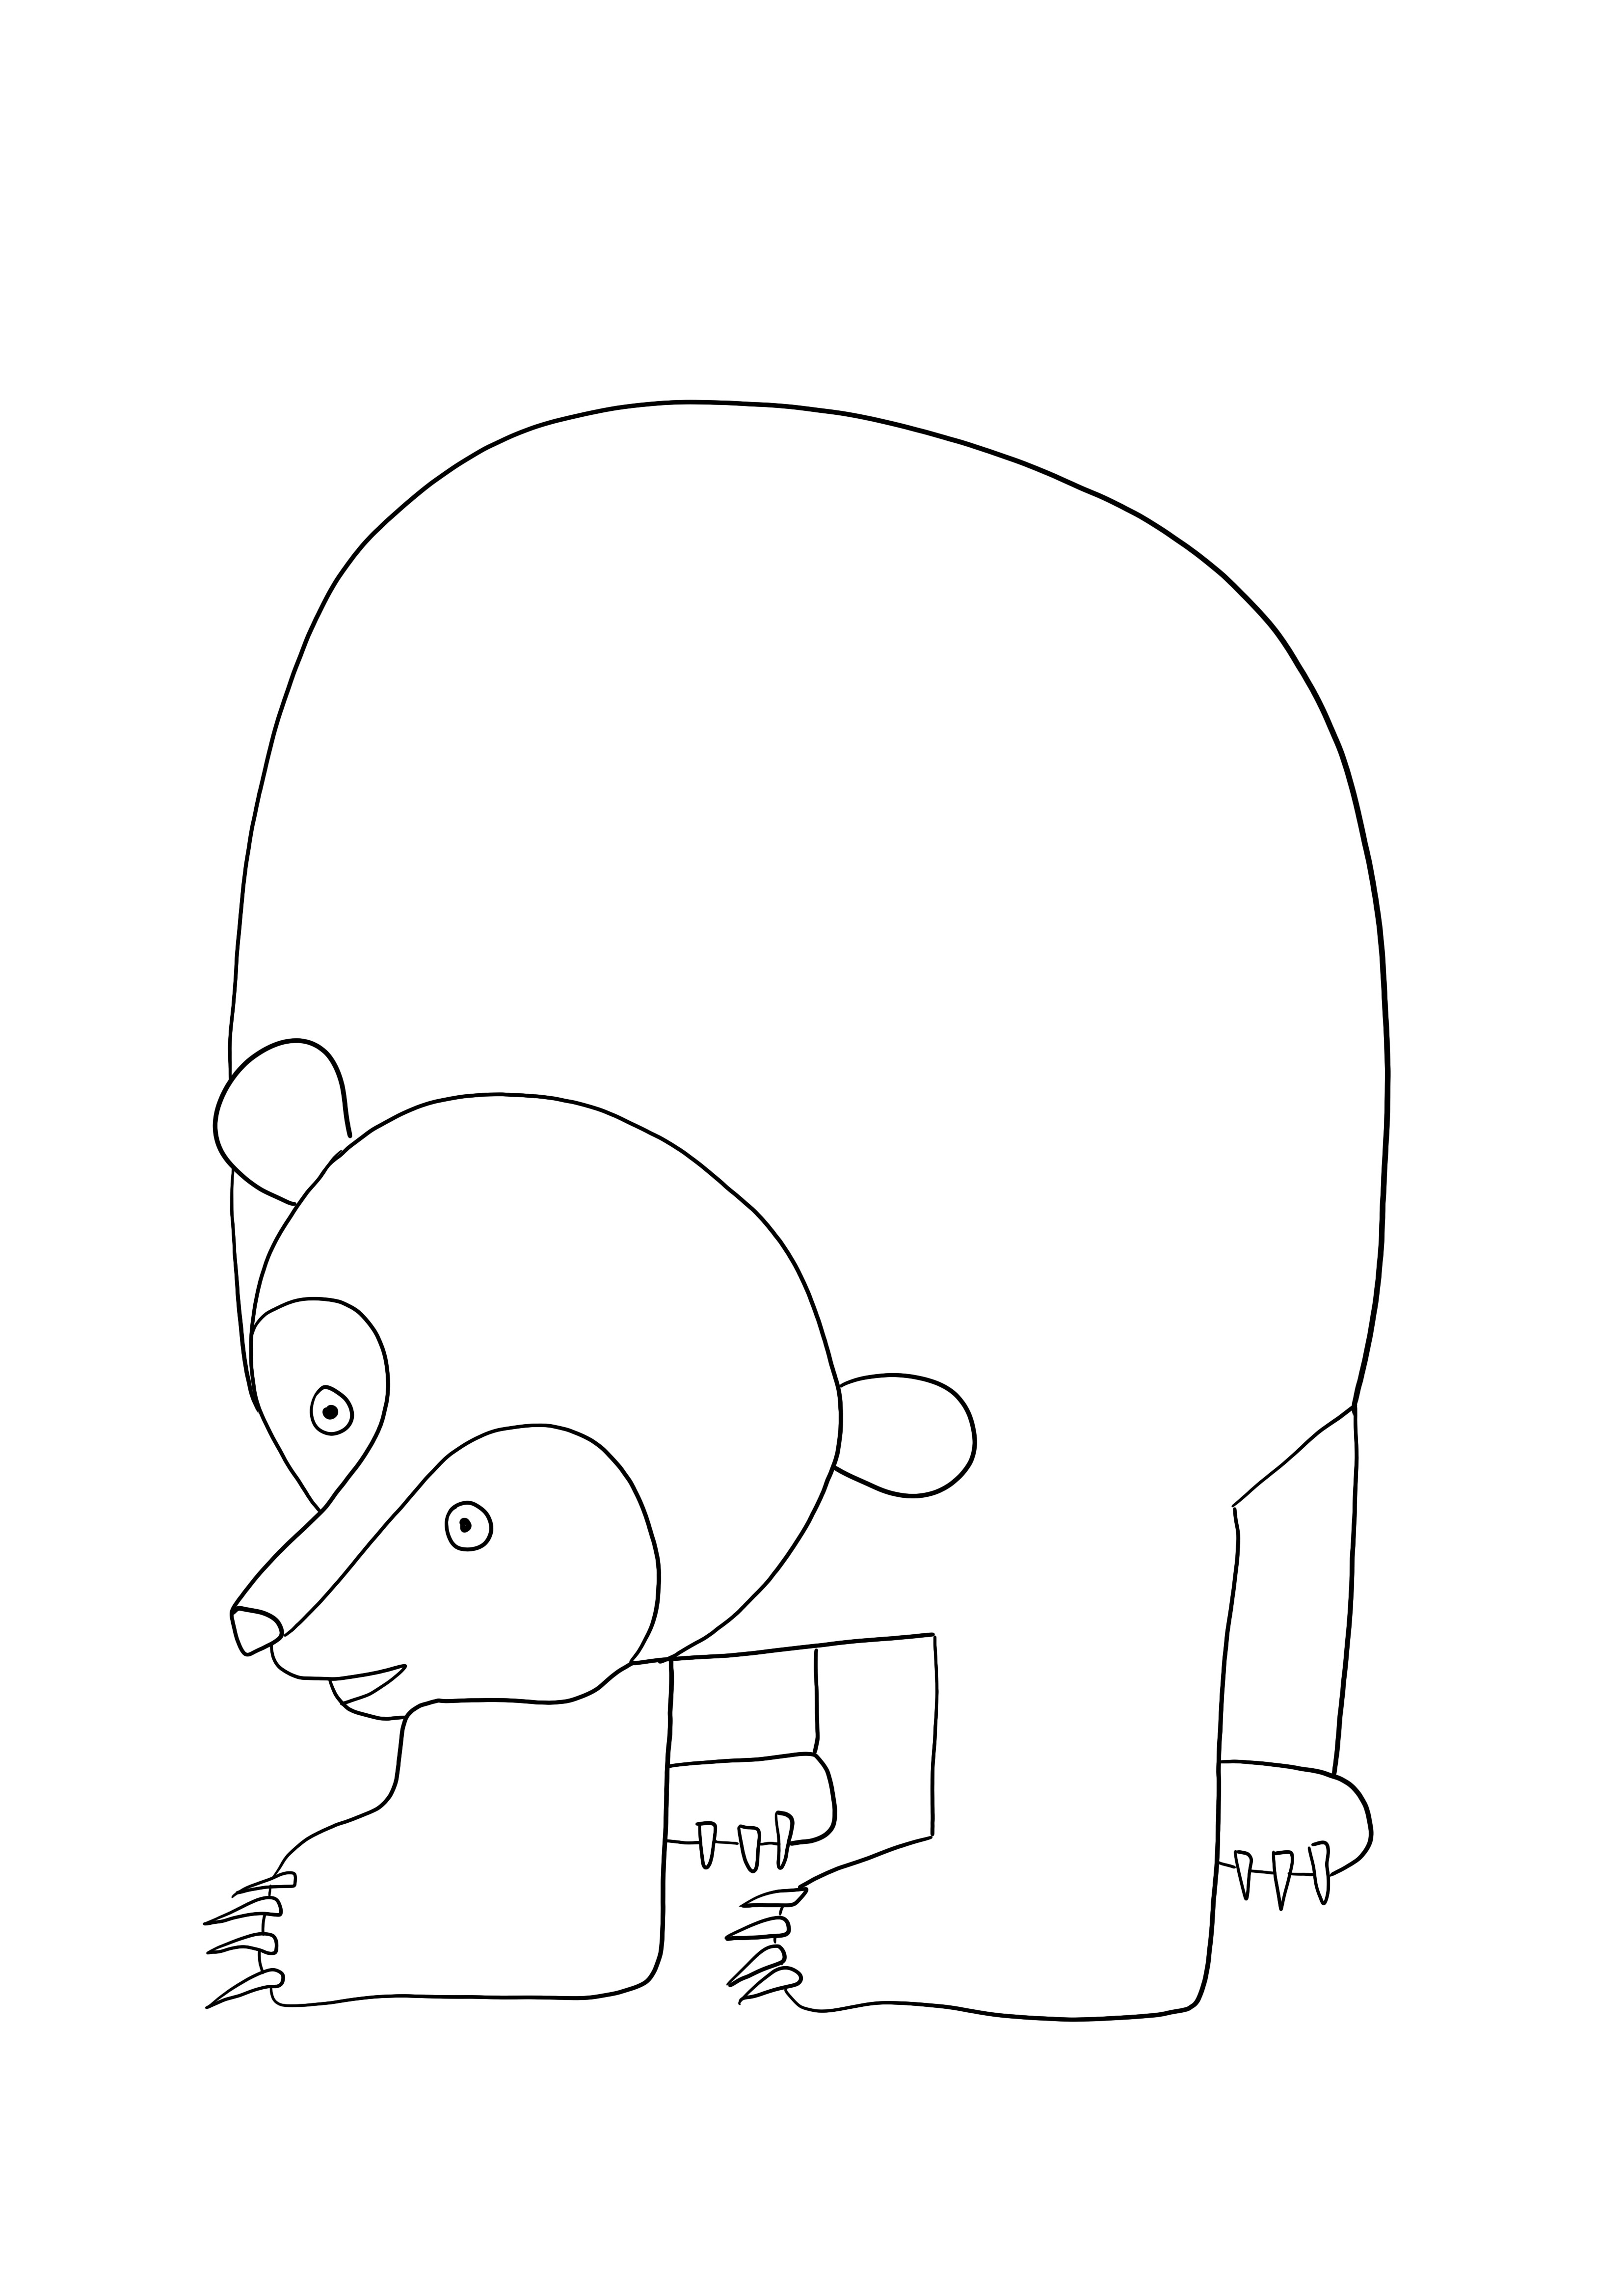 Niedźwiedź brunatny do bezpłatnego drukowania i kolorowania dla dzieci w każdym wieku